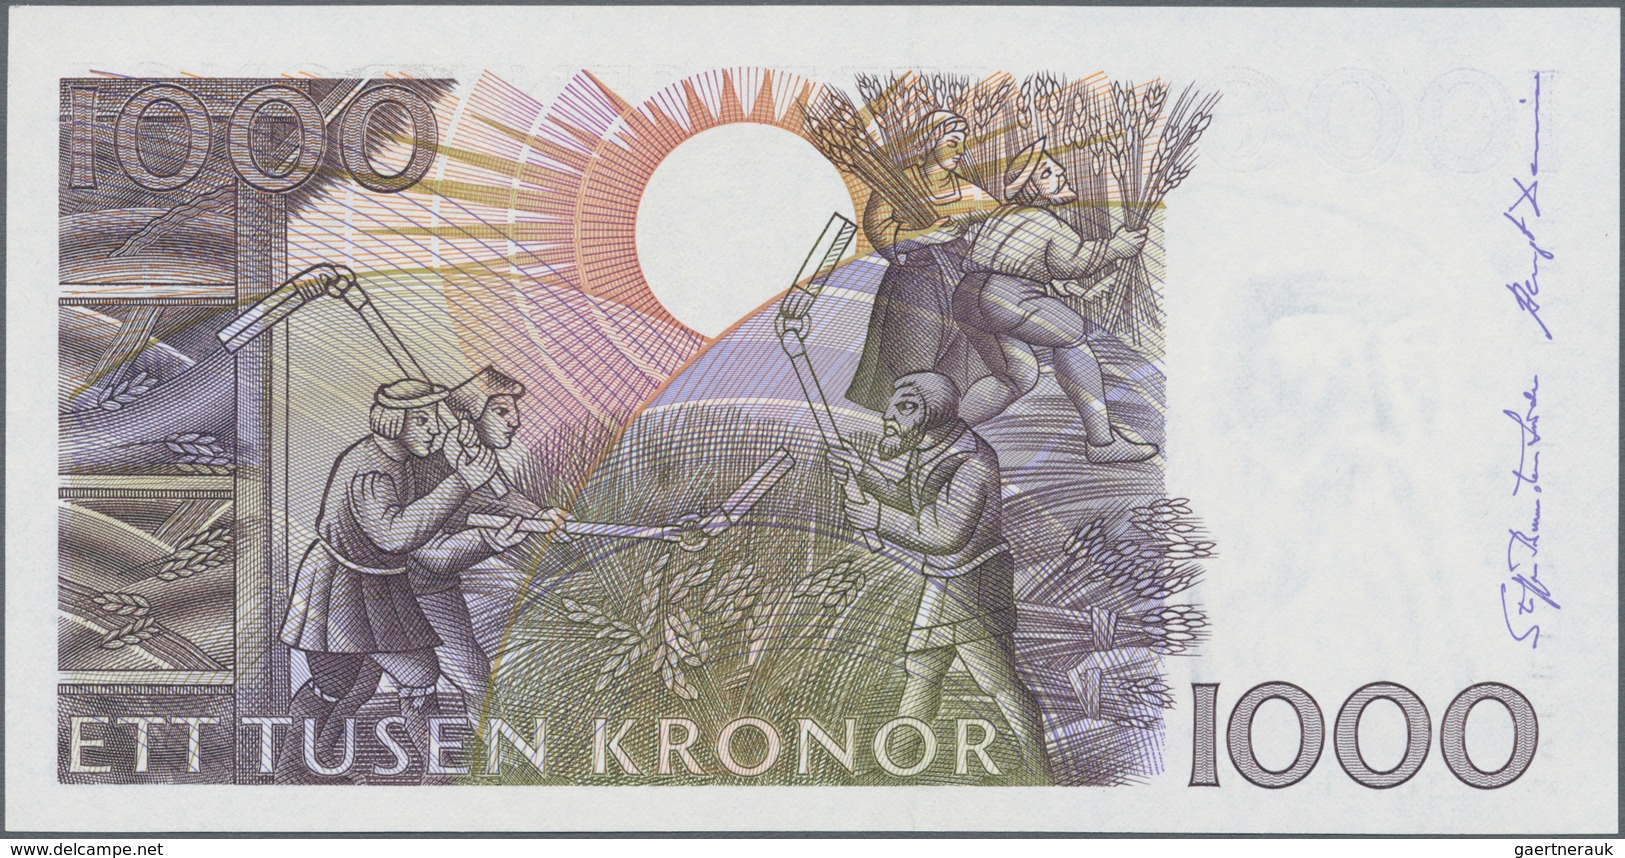 Sweden / Schweden: 1000 Kronor (199)2, P.60, Very Popular Banknote In Perfect UNC Condition. - Schweden